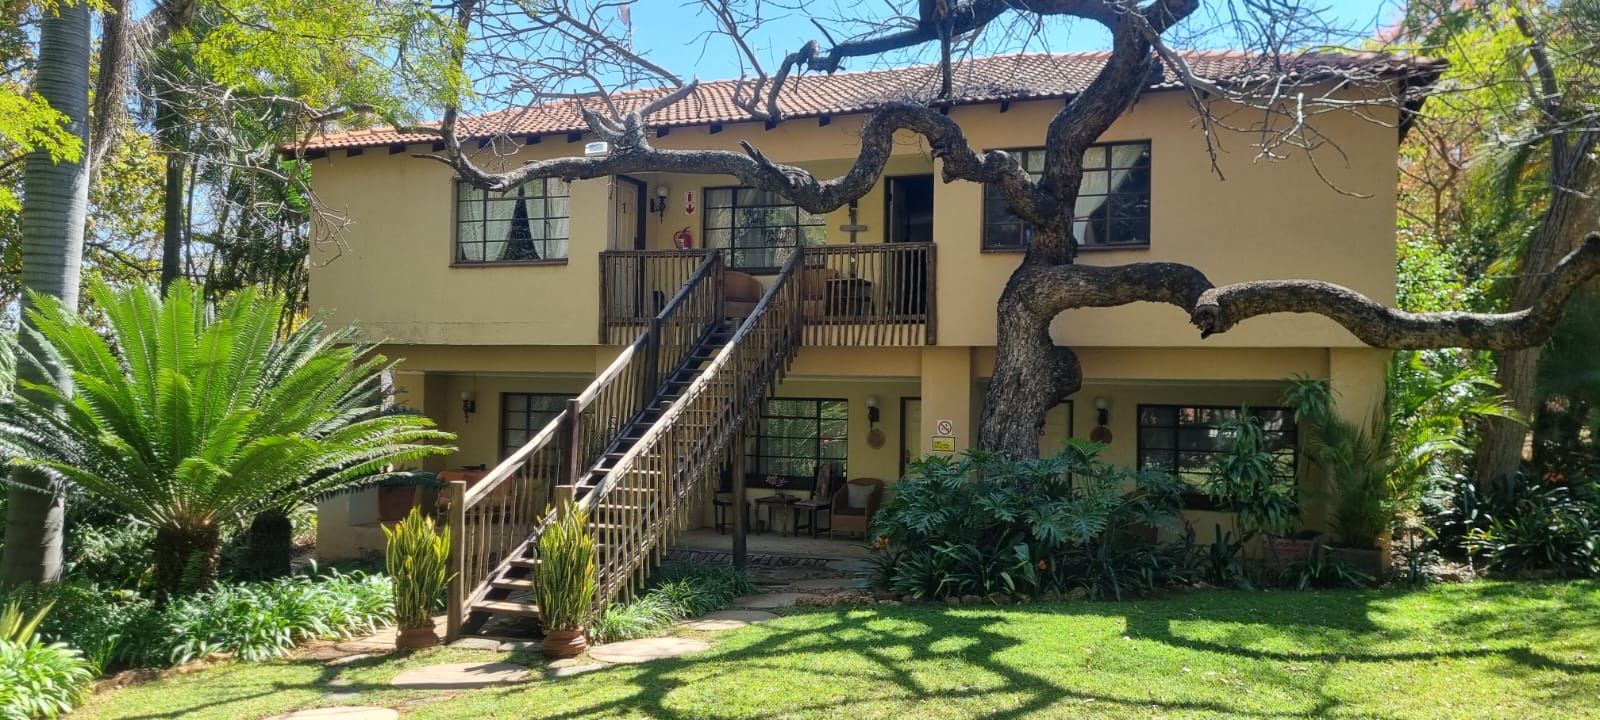 10 Bedroom Property for Sale in Mokopane Rural Limpopo